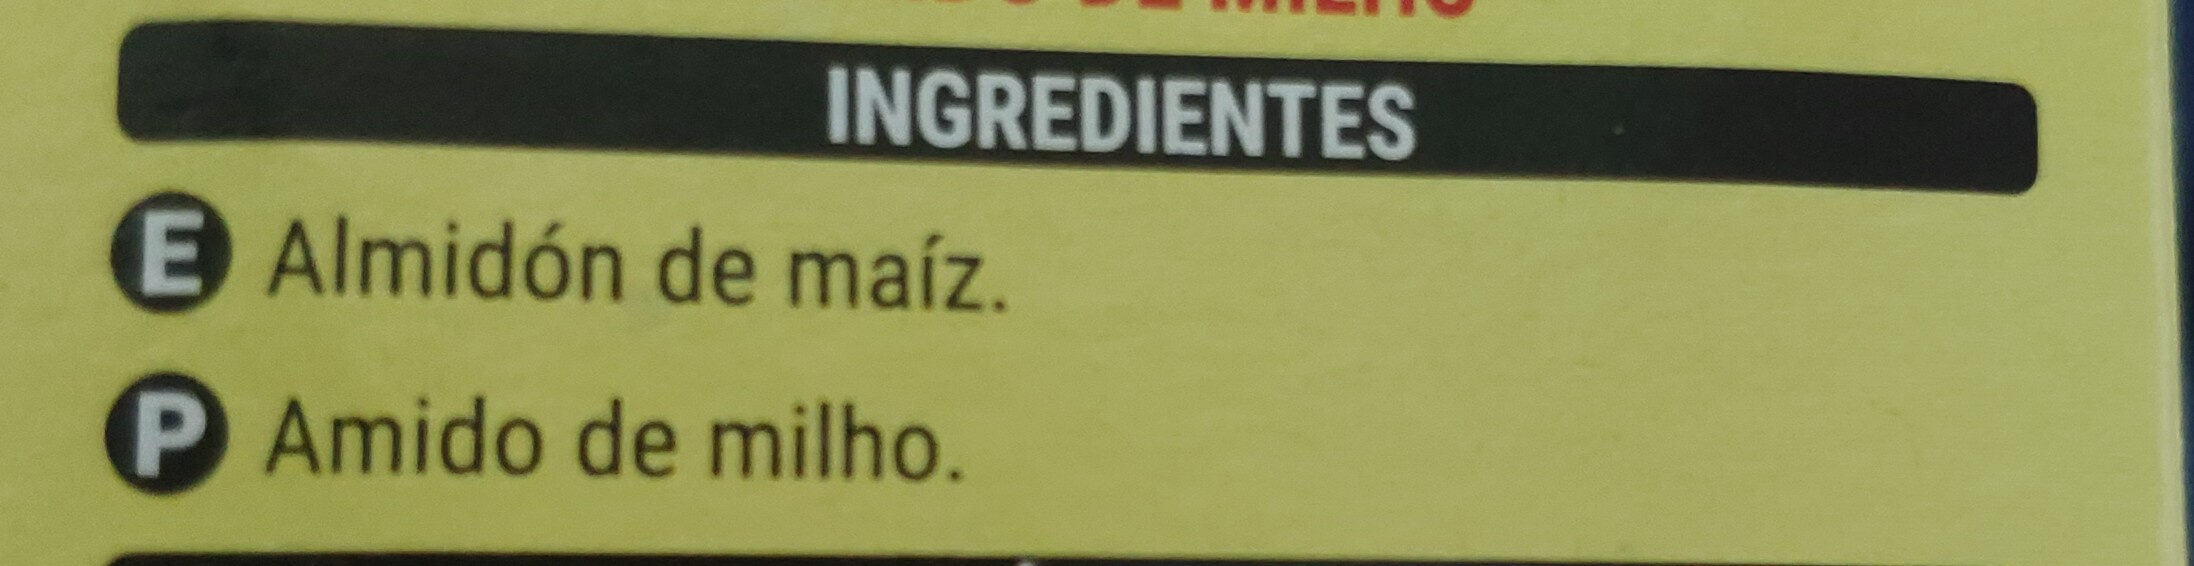 Harina fina de maíz - Ingredients - es